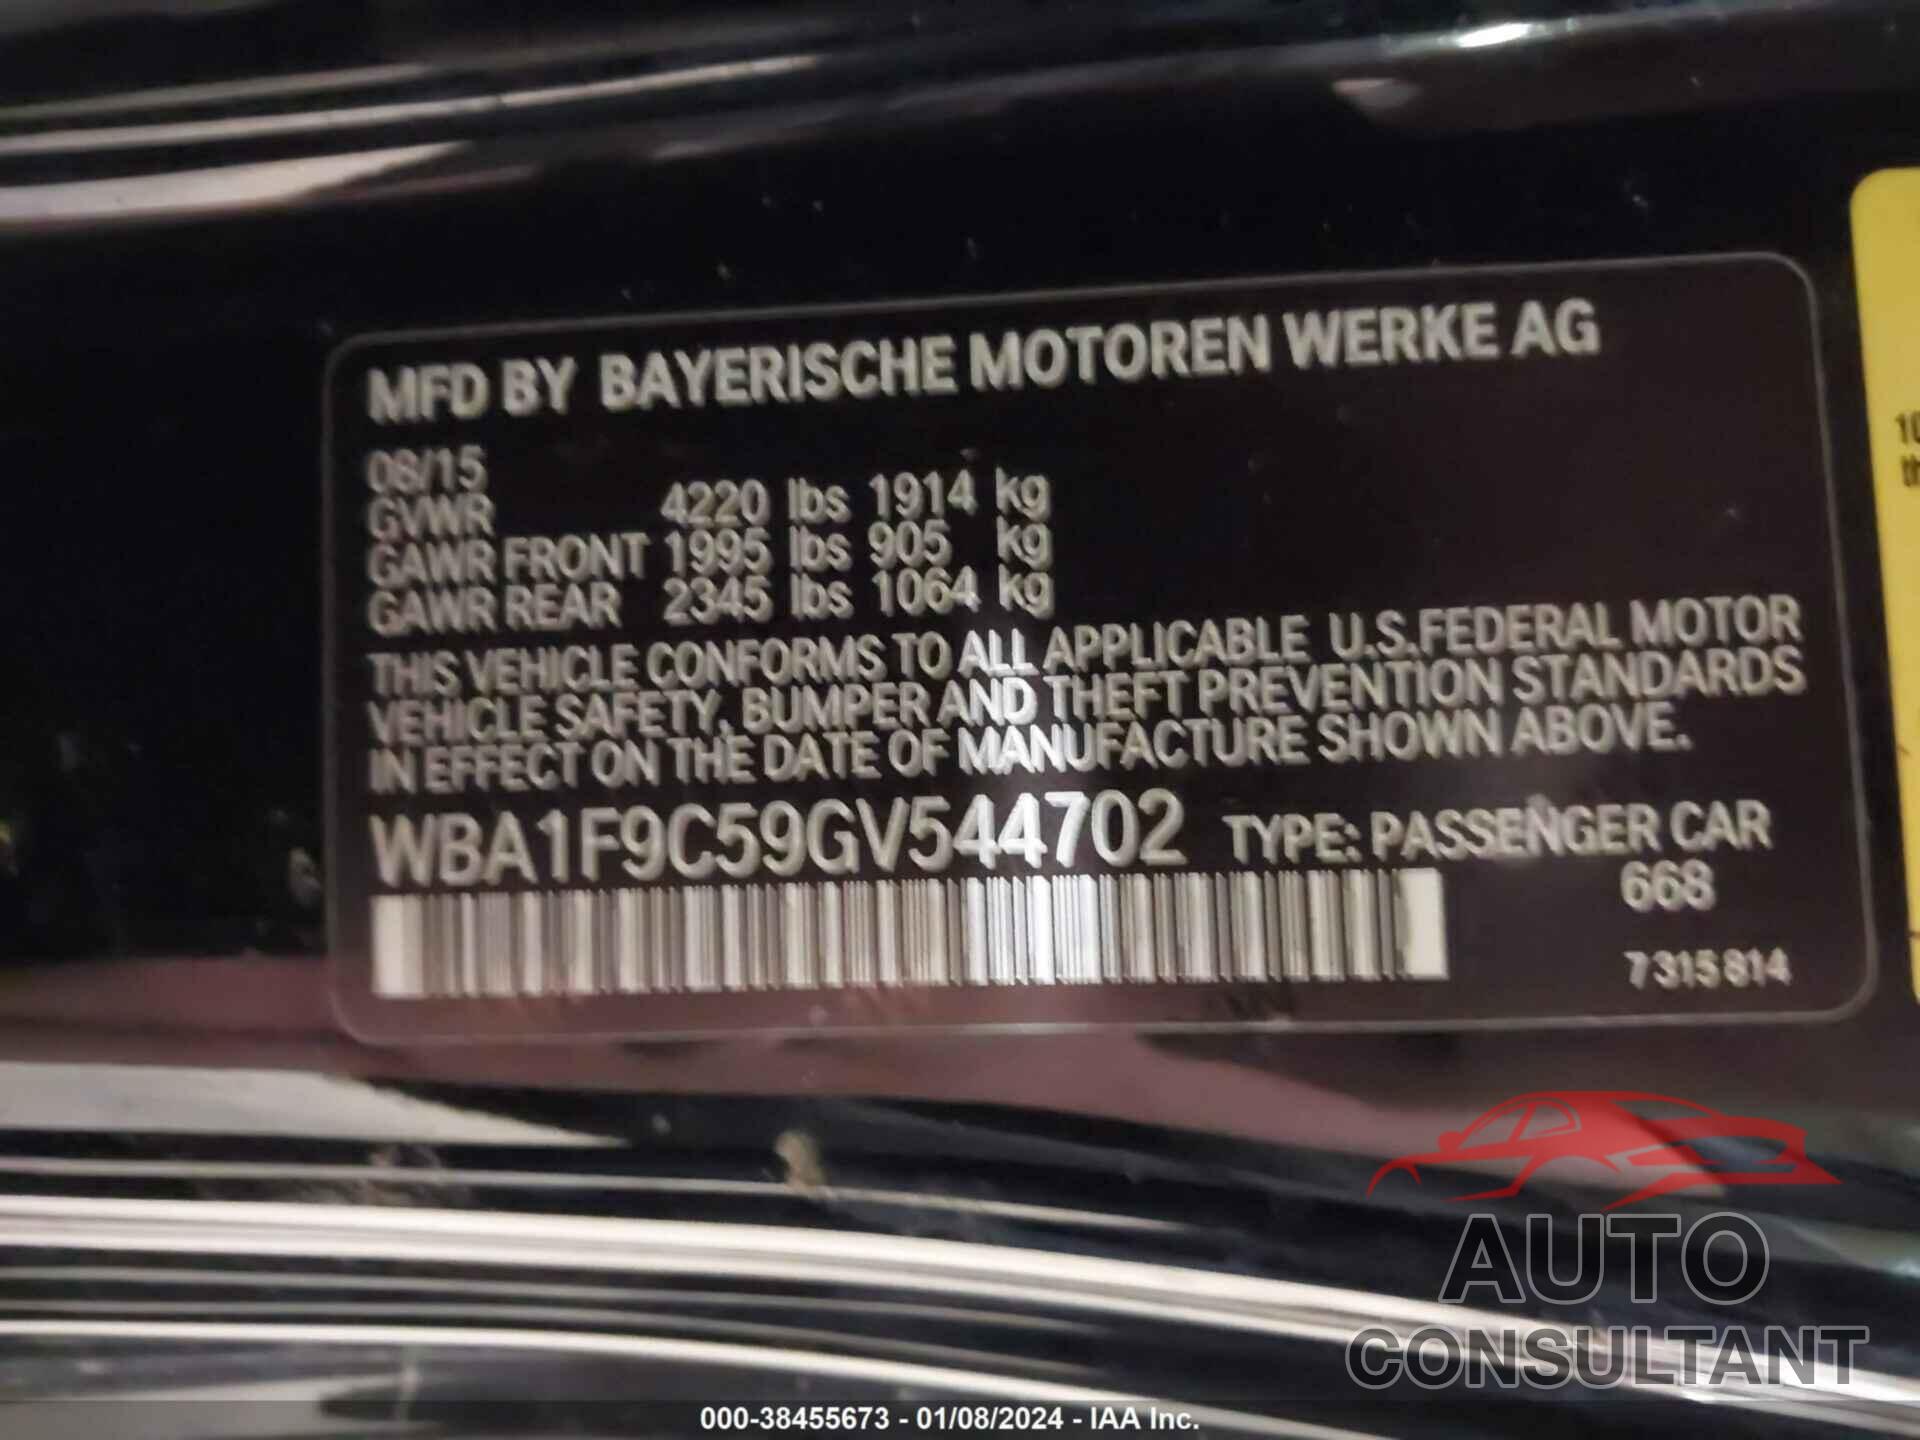 BMW 228I 2016 - WBA1F9C59GV544702